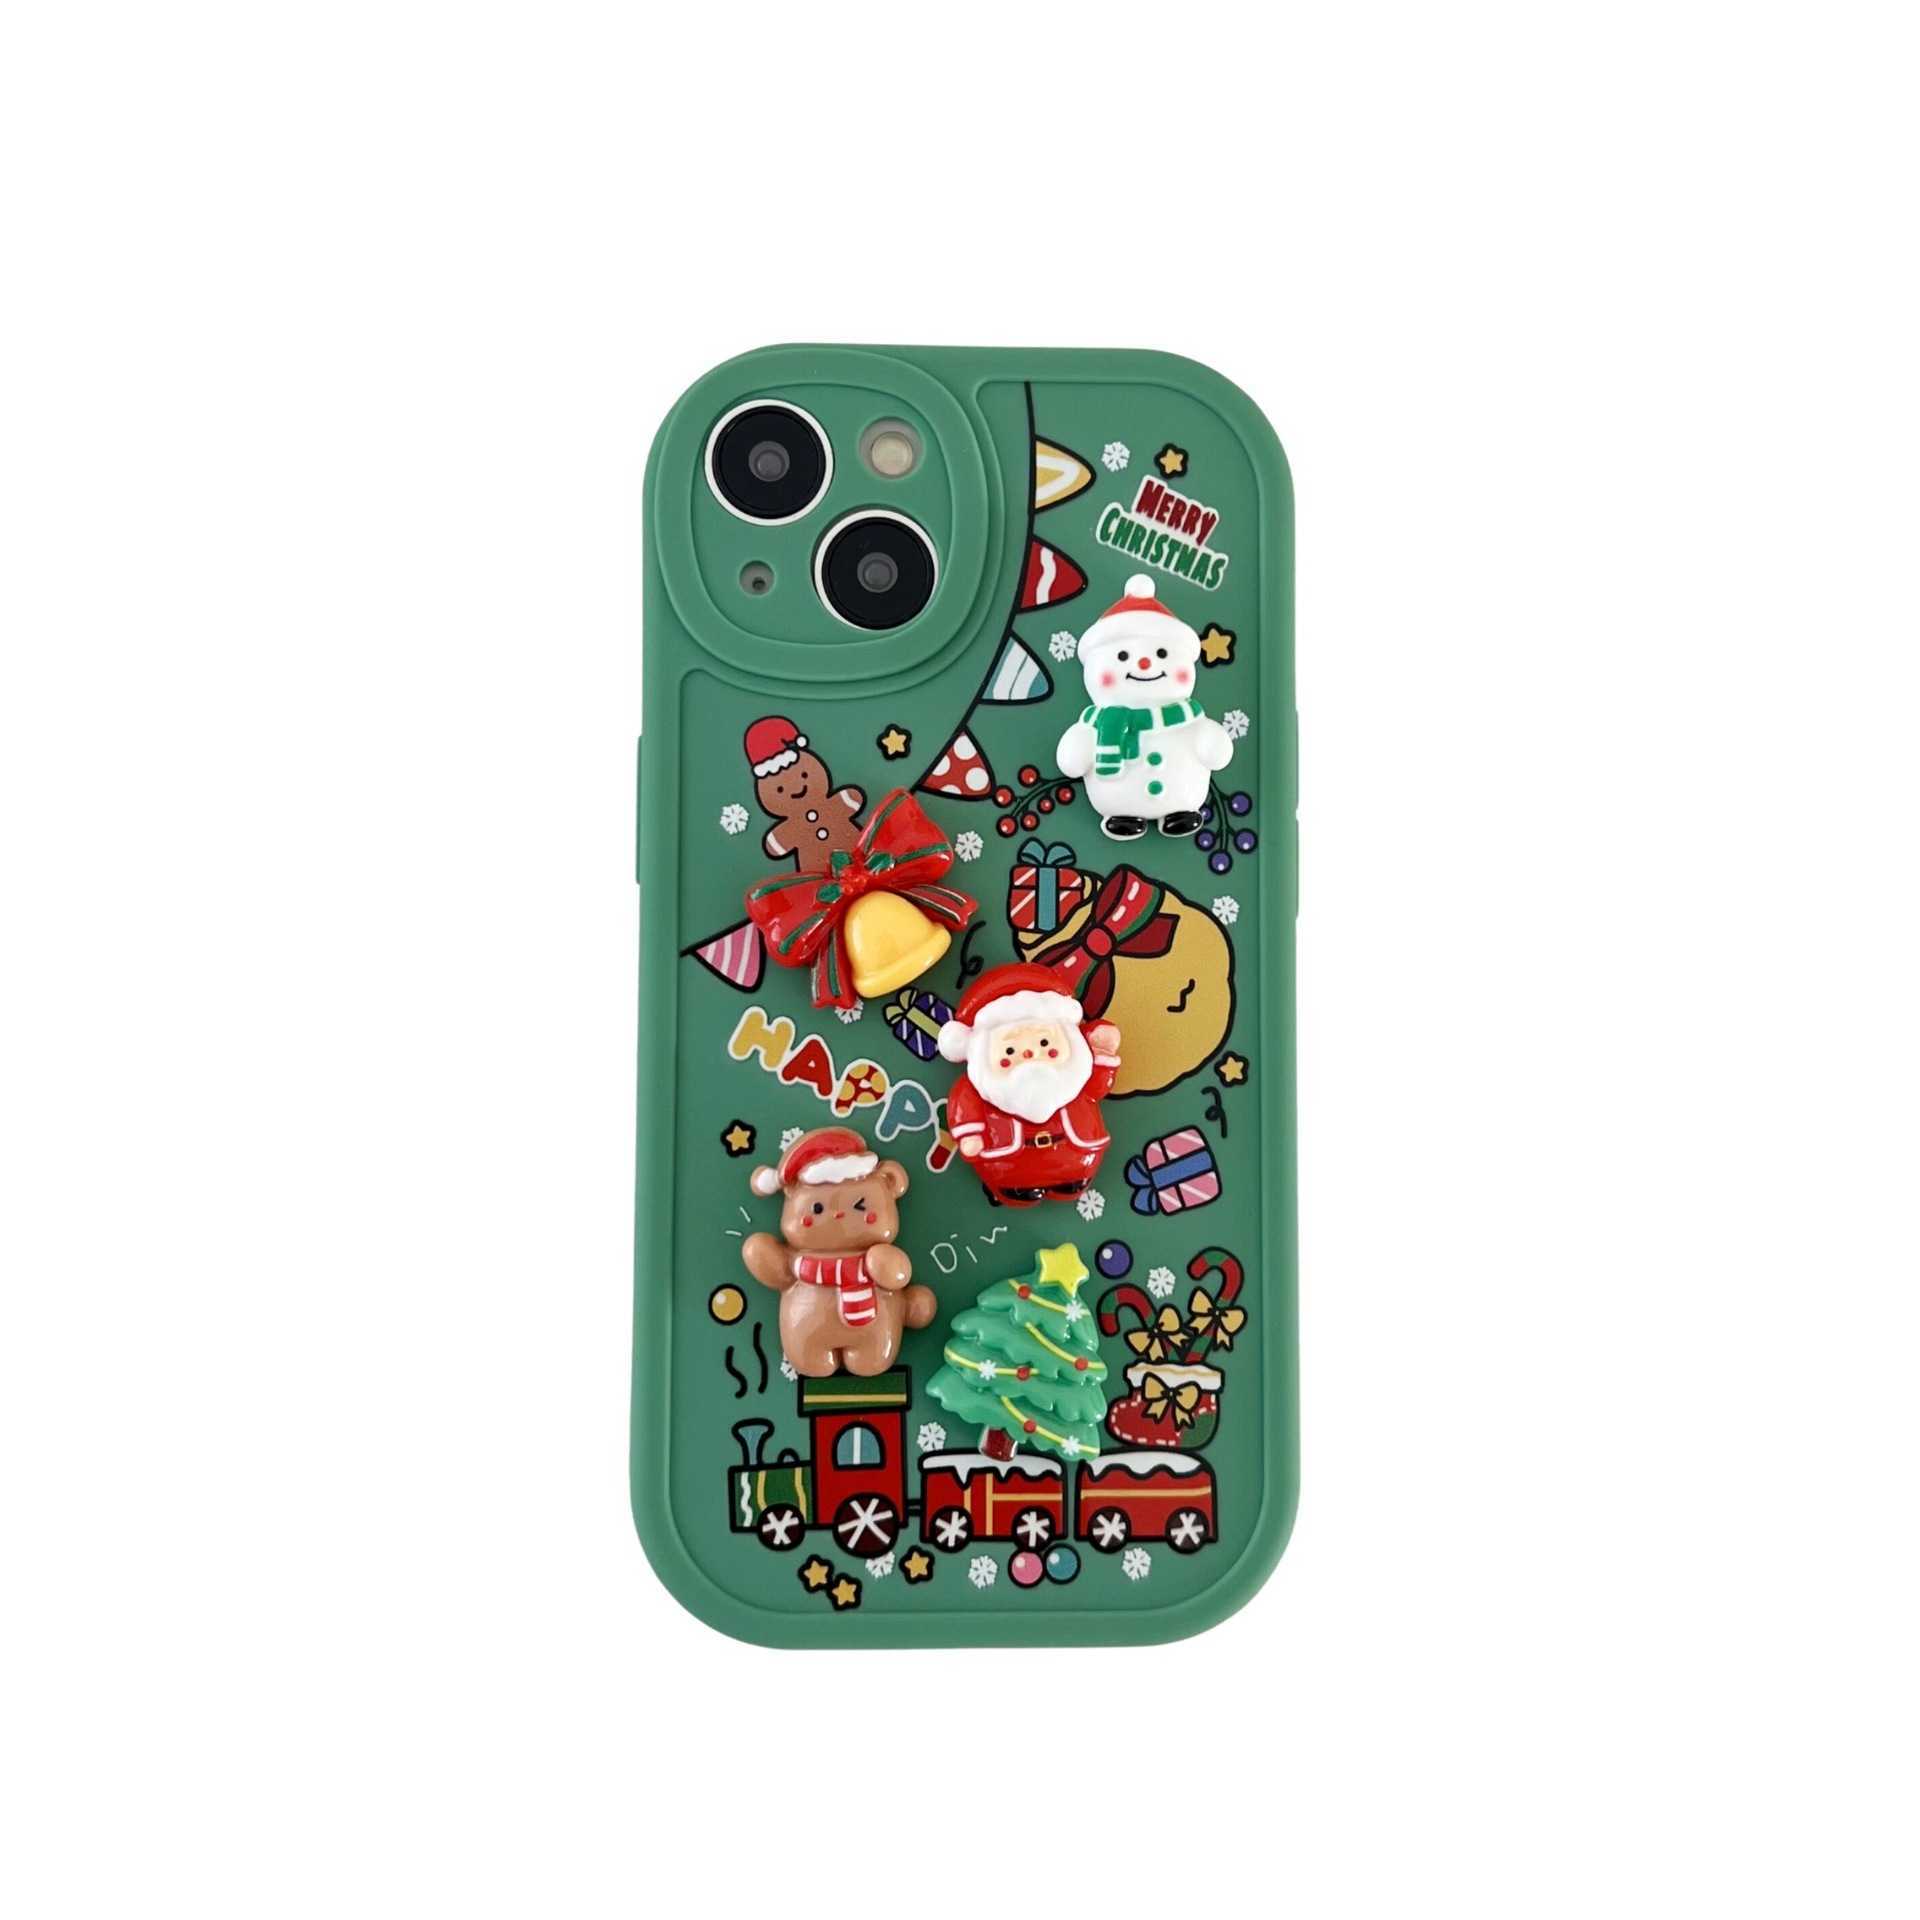 Christmas 3D Santa Claus phone case  drop resistant silicone soft case